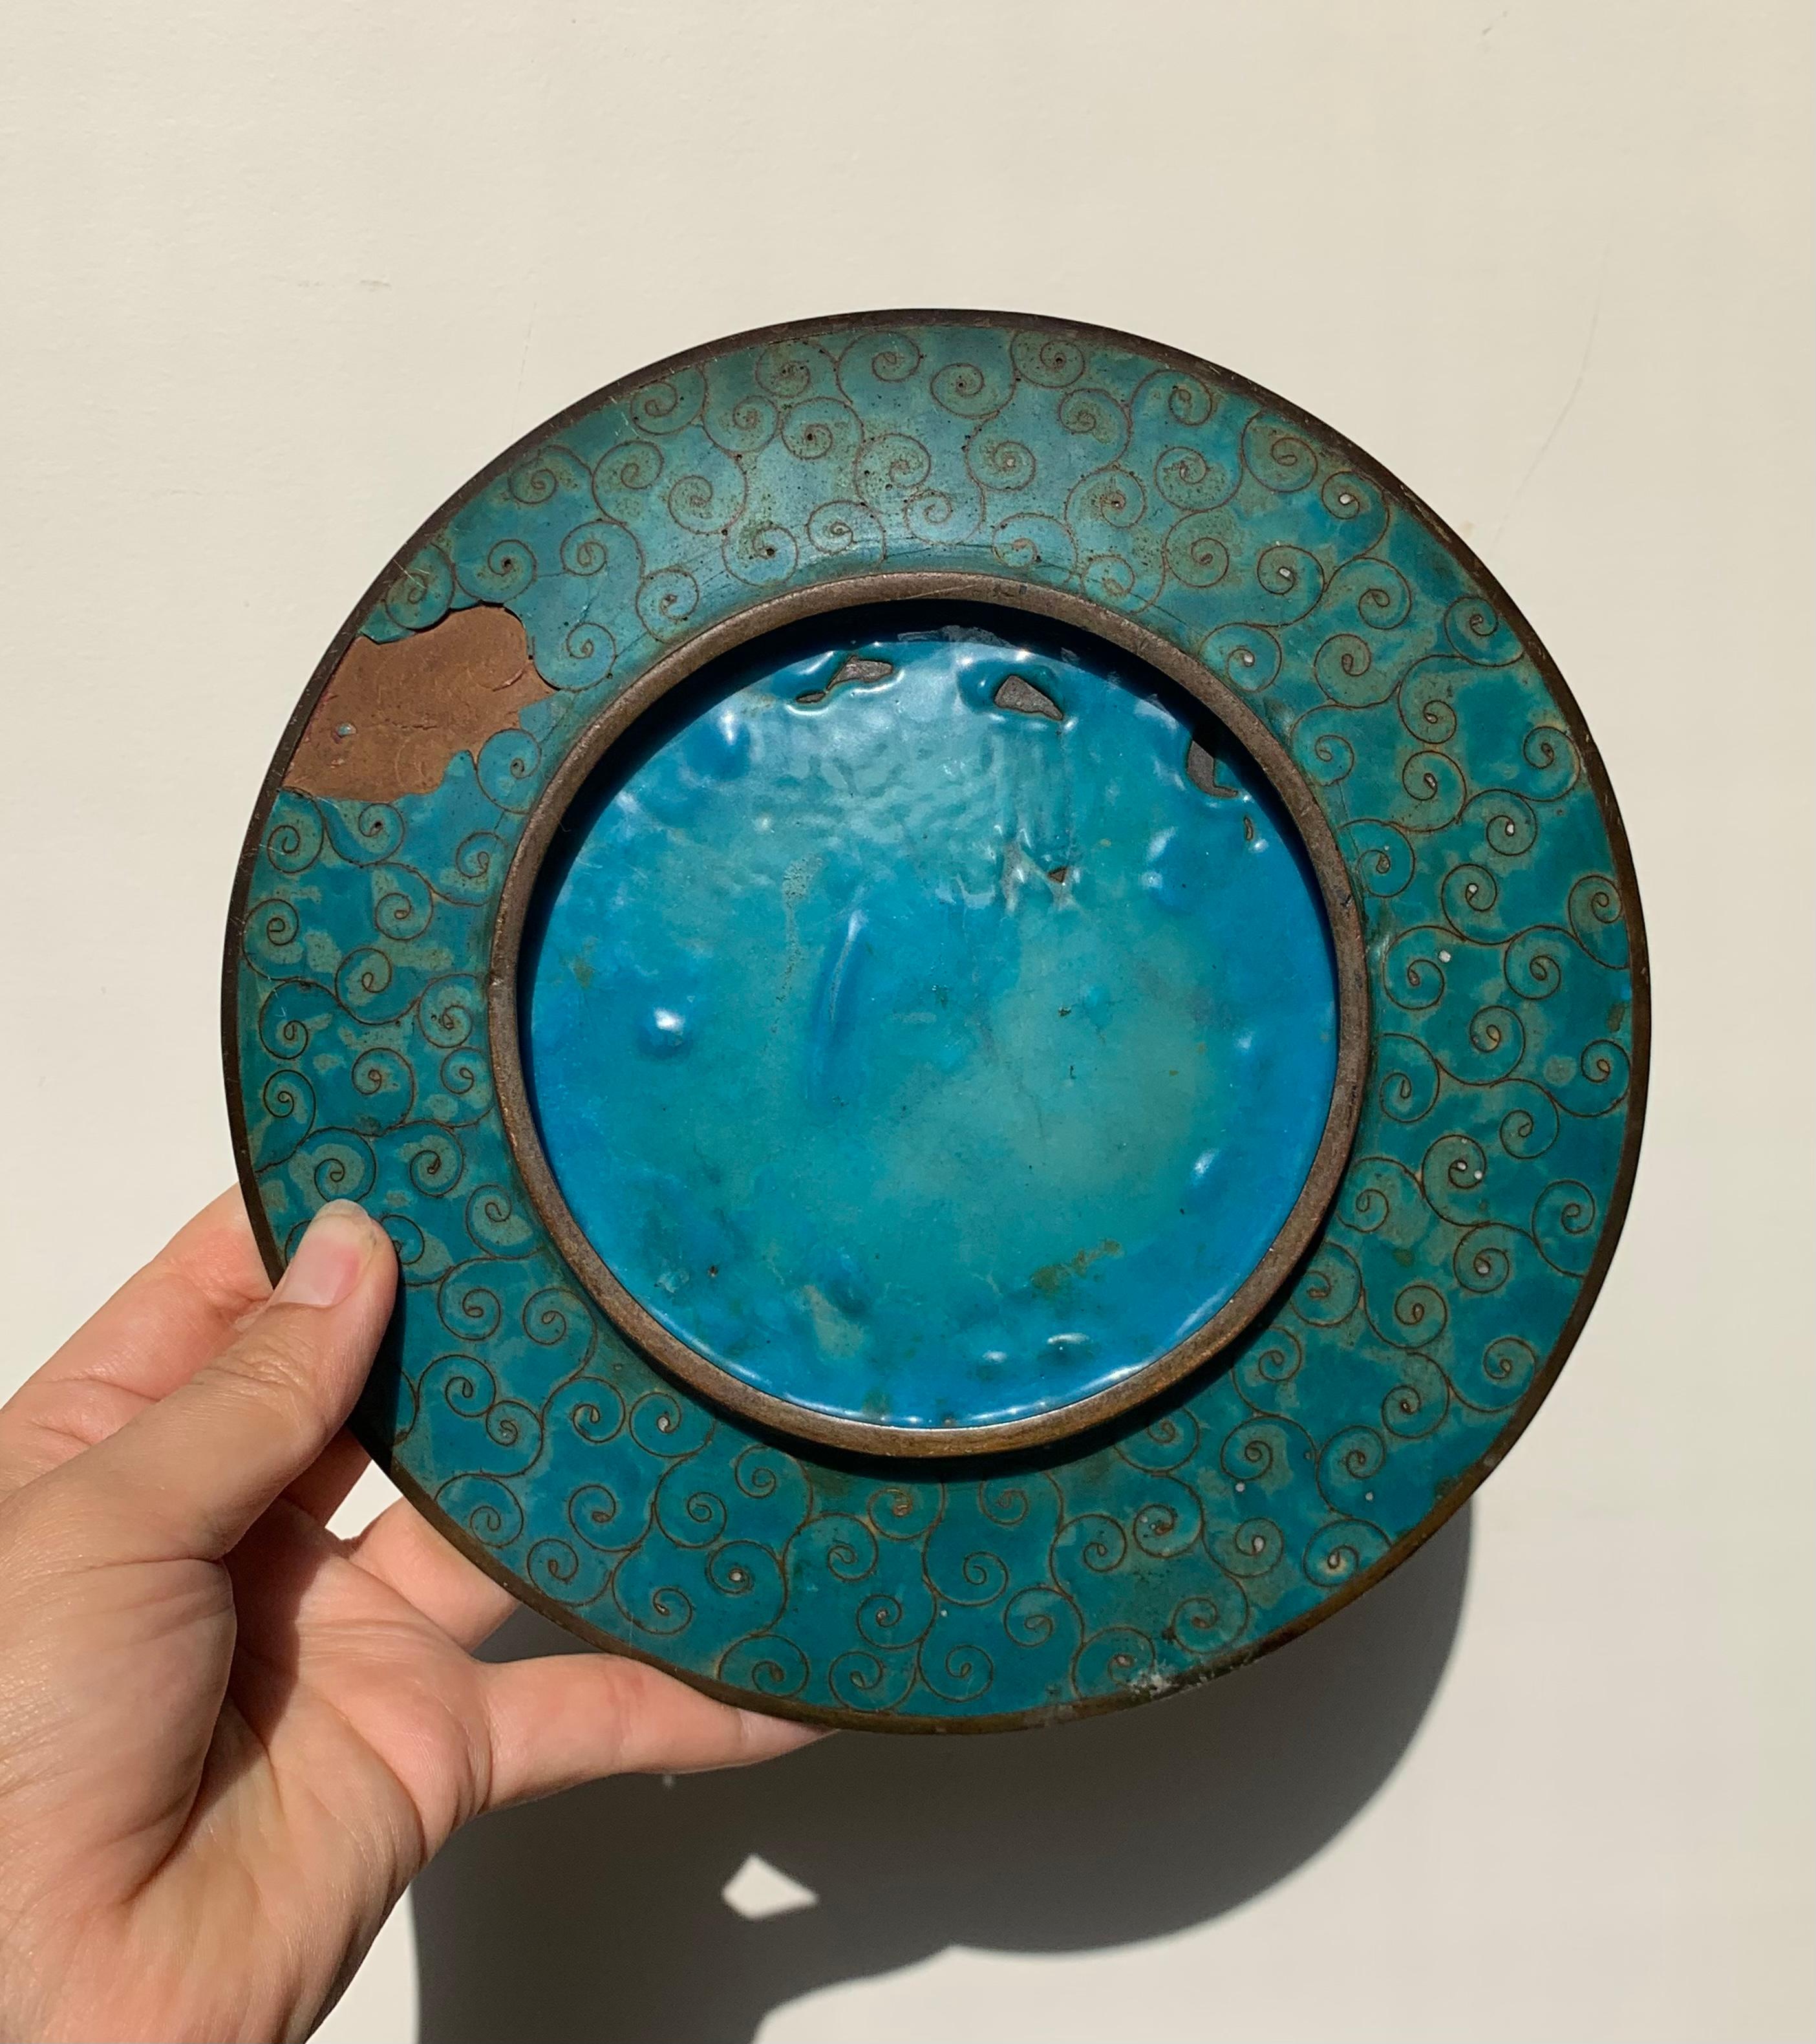 Cloissoné Antique Arabian Hand-Painted Metal Cloisonné Plate